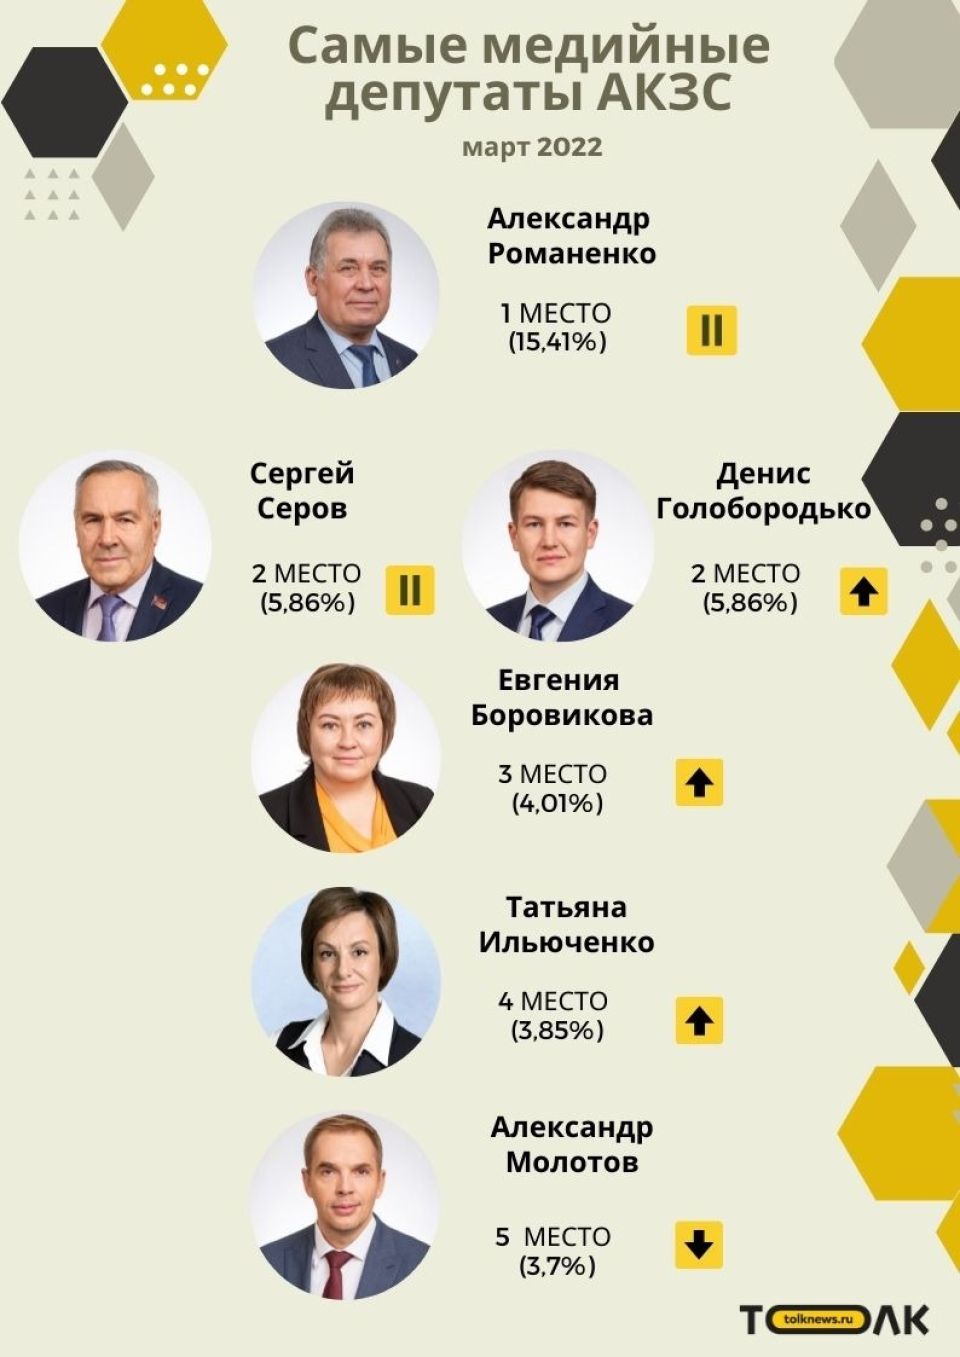 Рейтинг медийности депутатов АКЗС в марте 2022 года